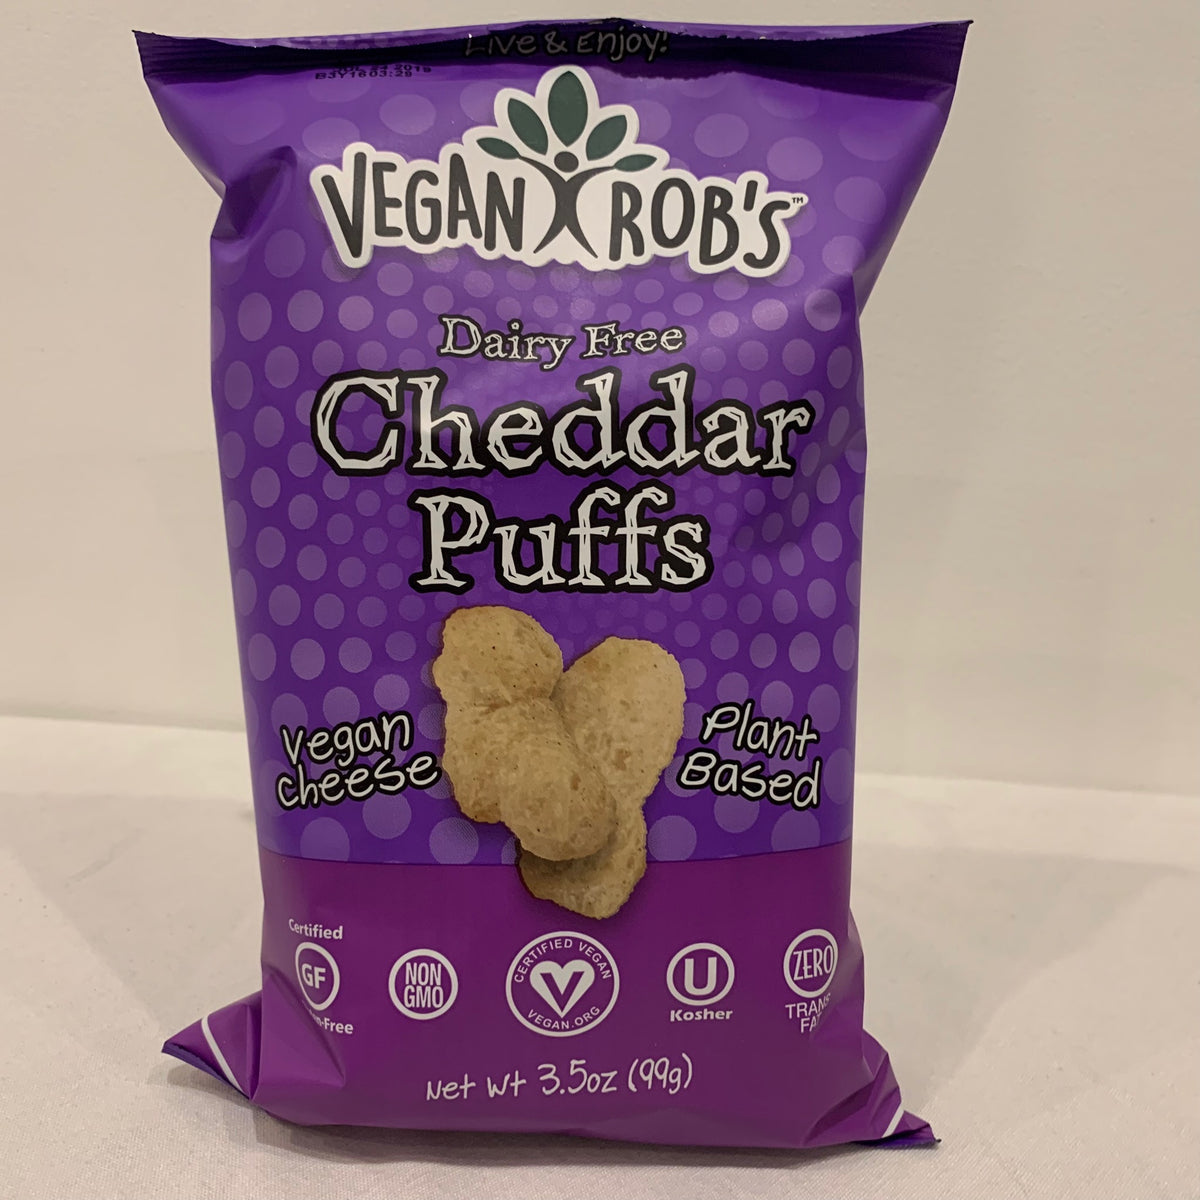 Vegan Robs Cheddar Puffs